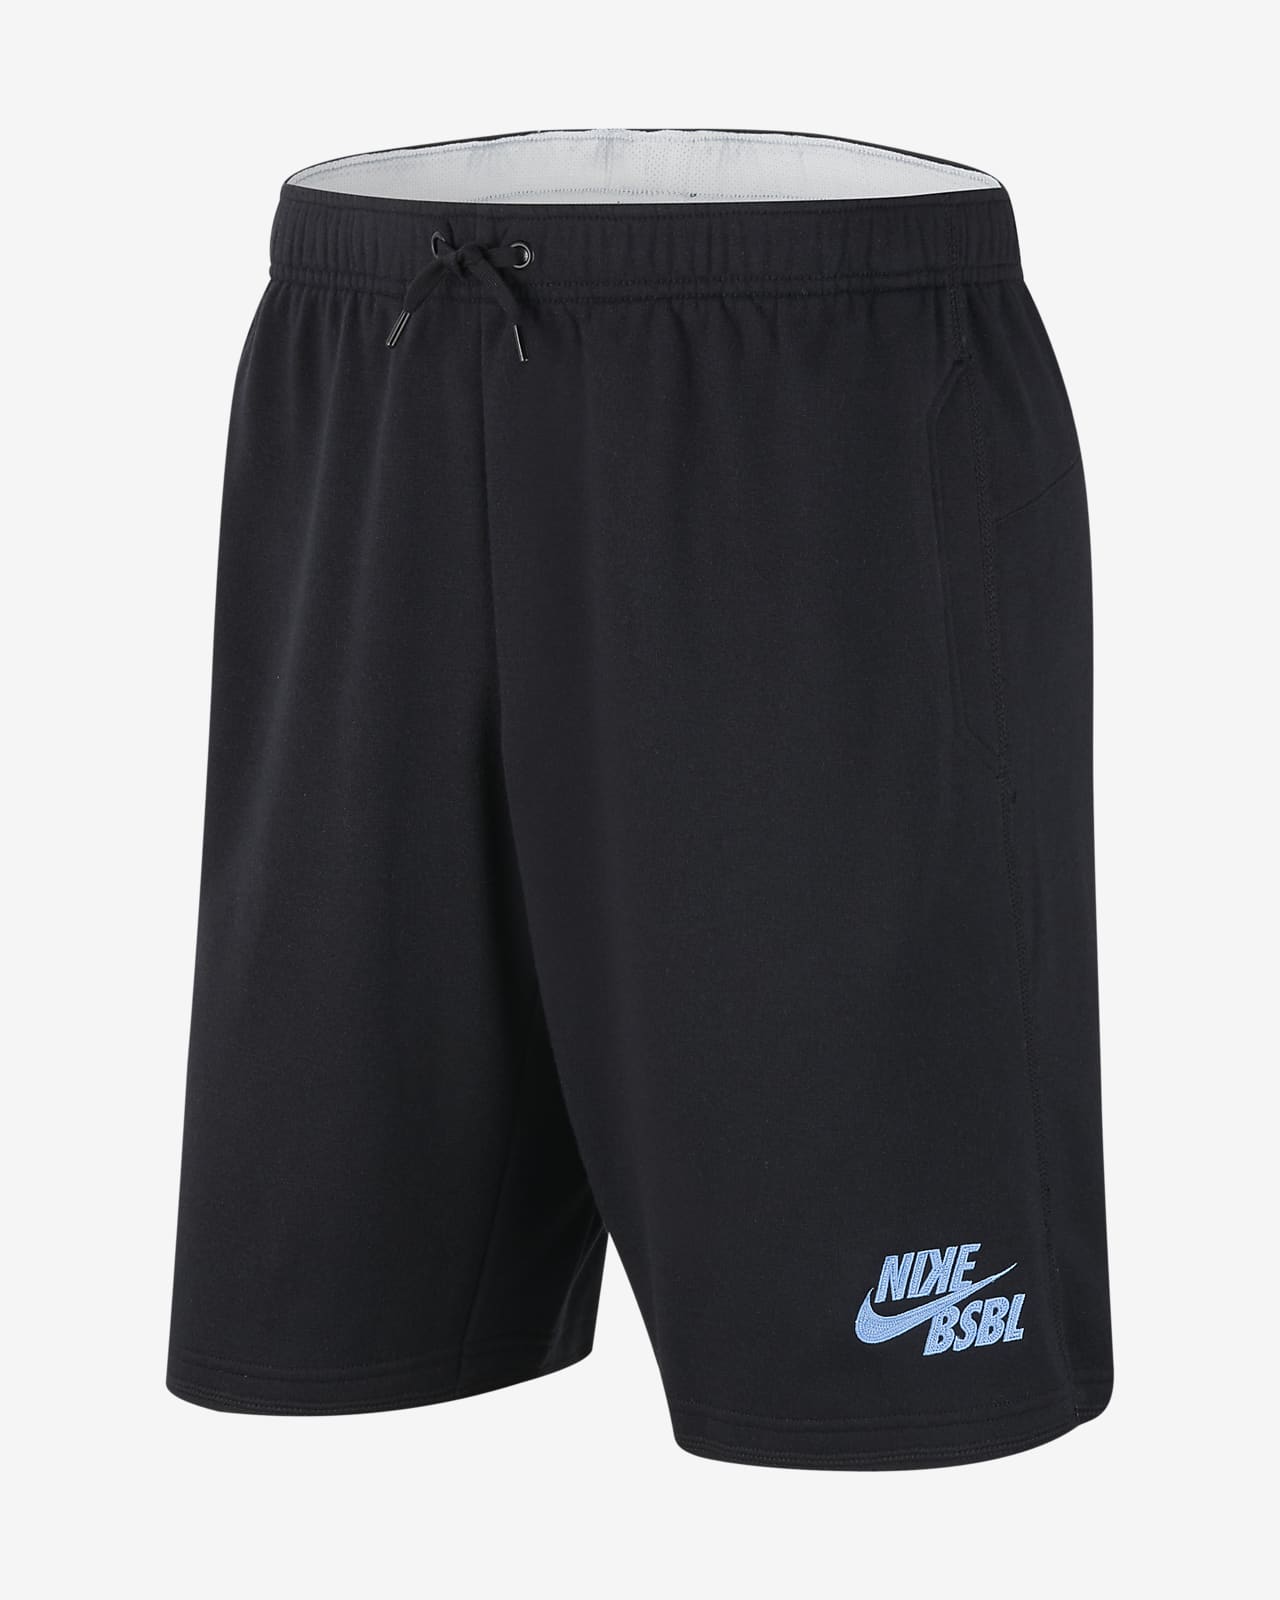 nike men's flux baseball shorts